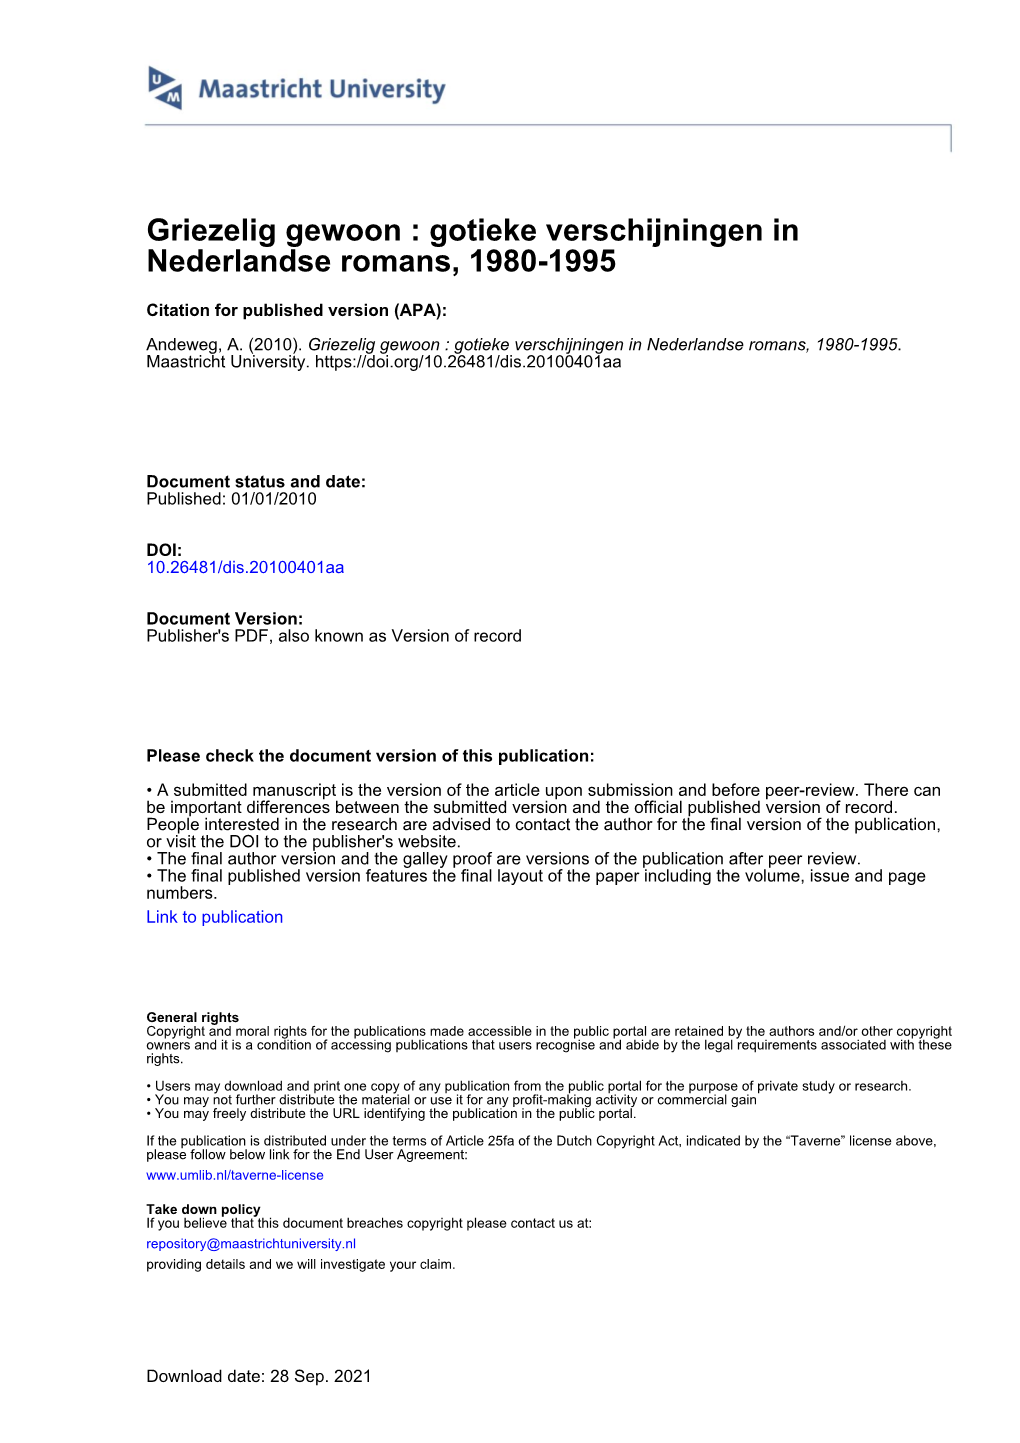 Gotieke Verschijningen in Nederlandse Romans, 1980-1995